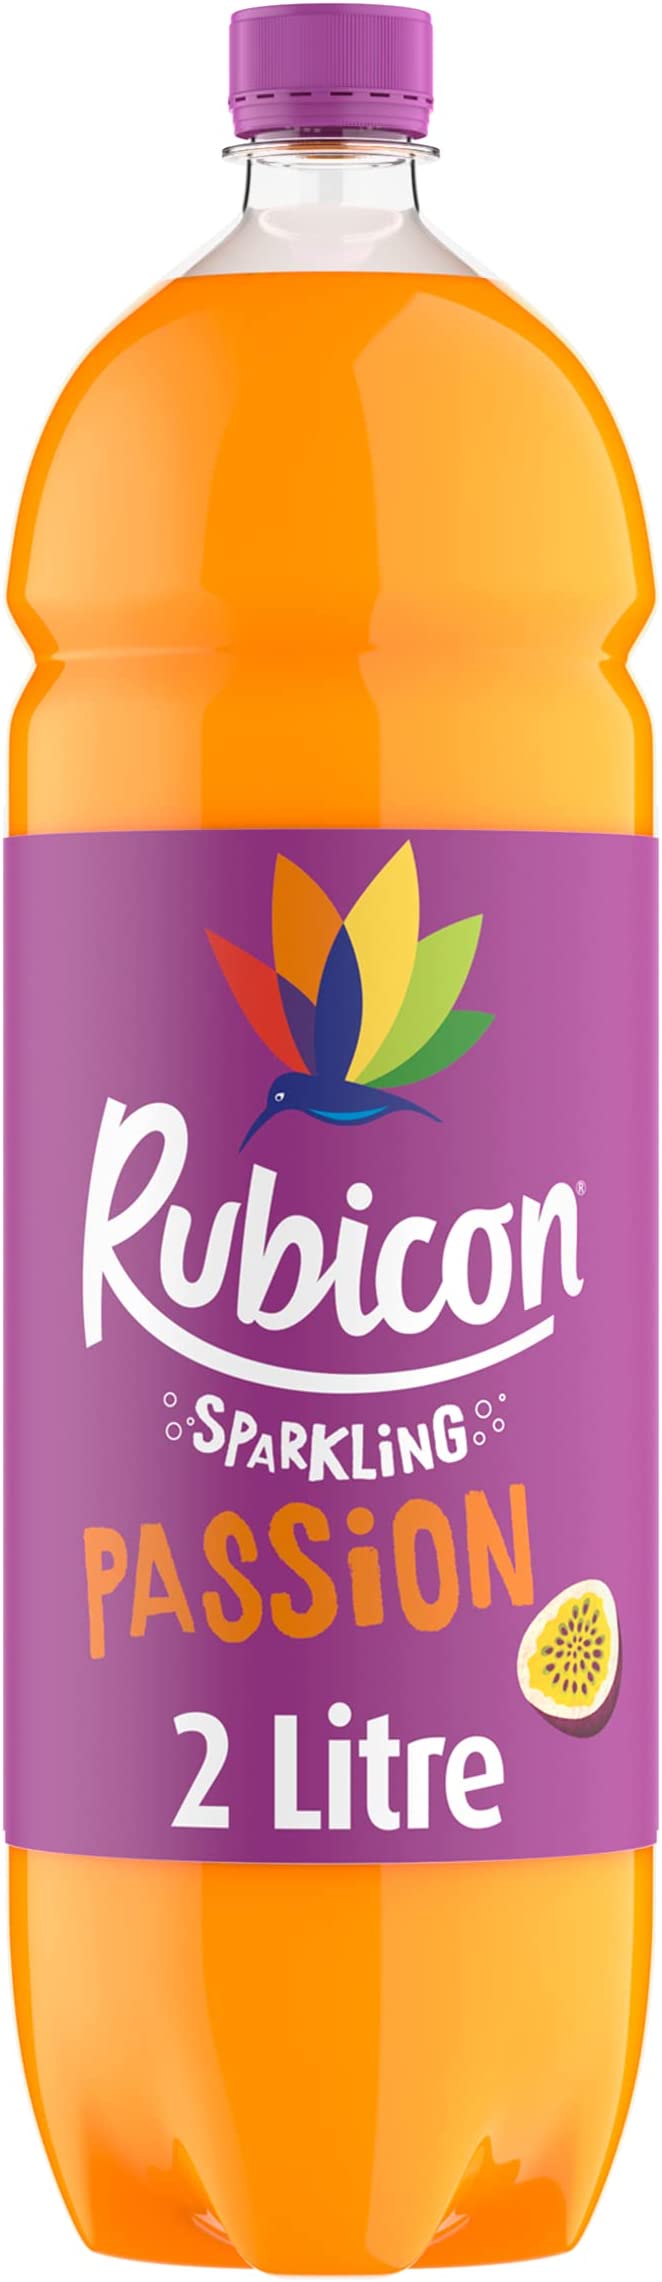 Rubicon Passion - 6x2ltr